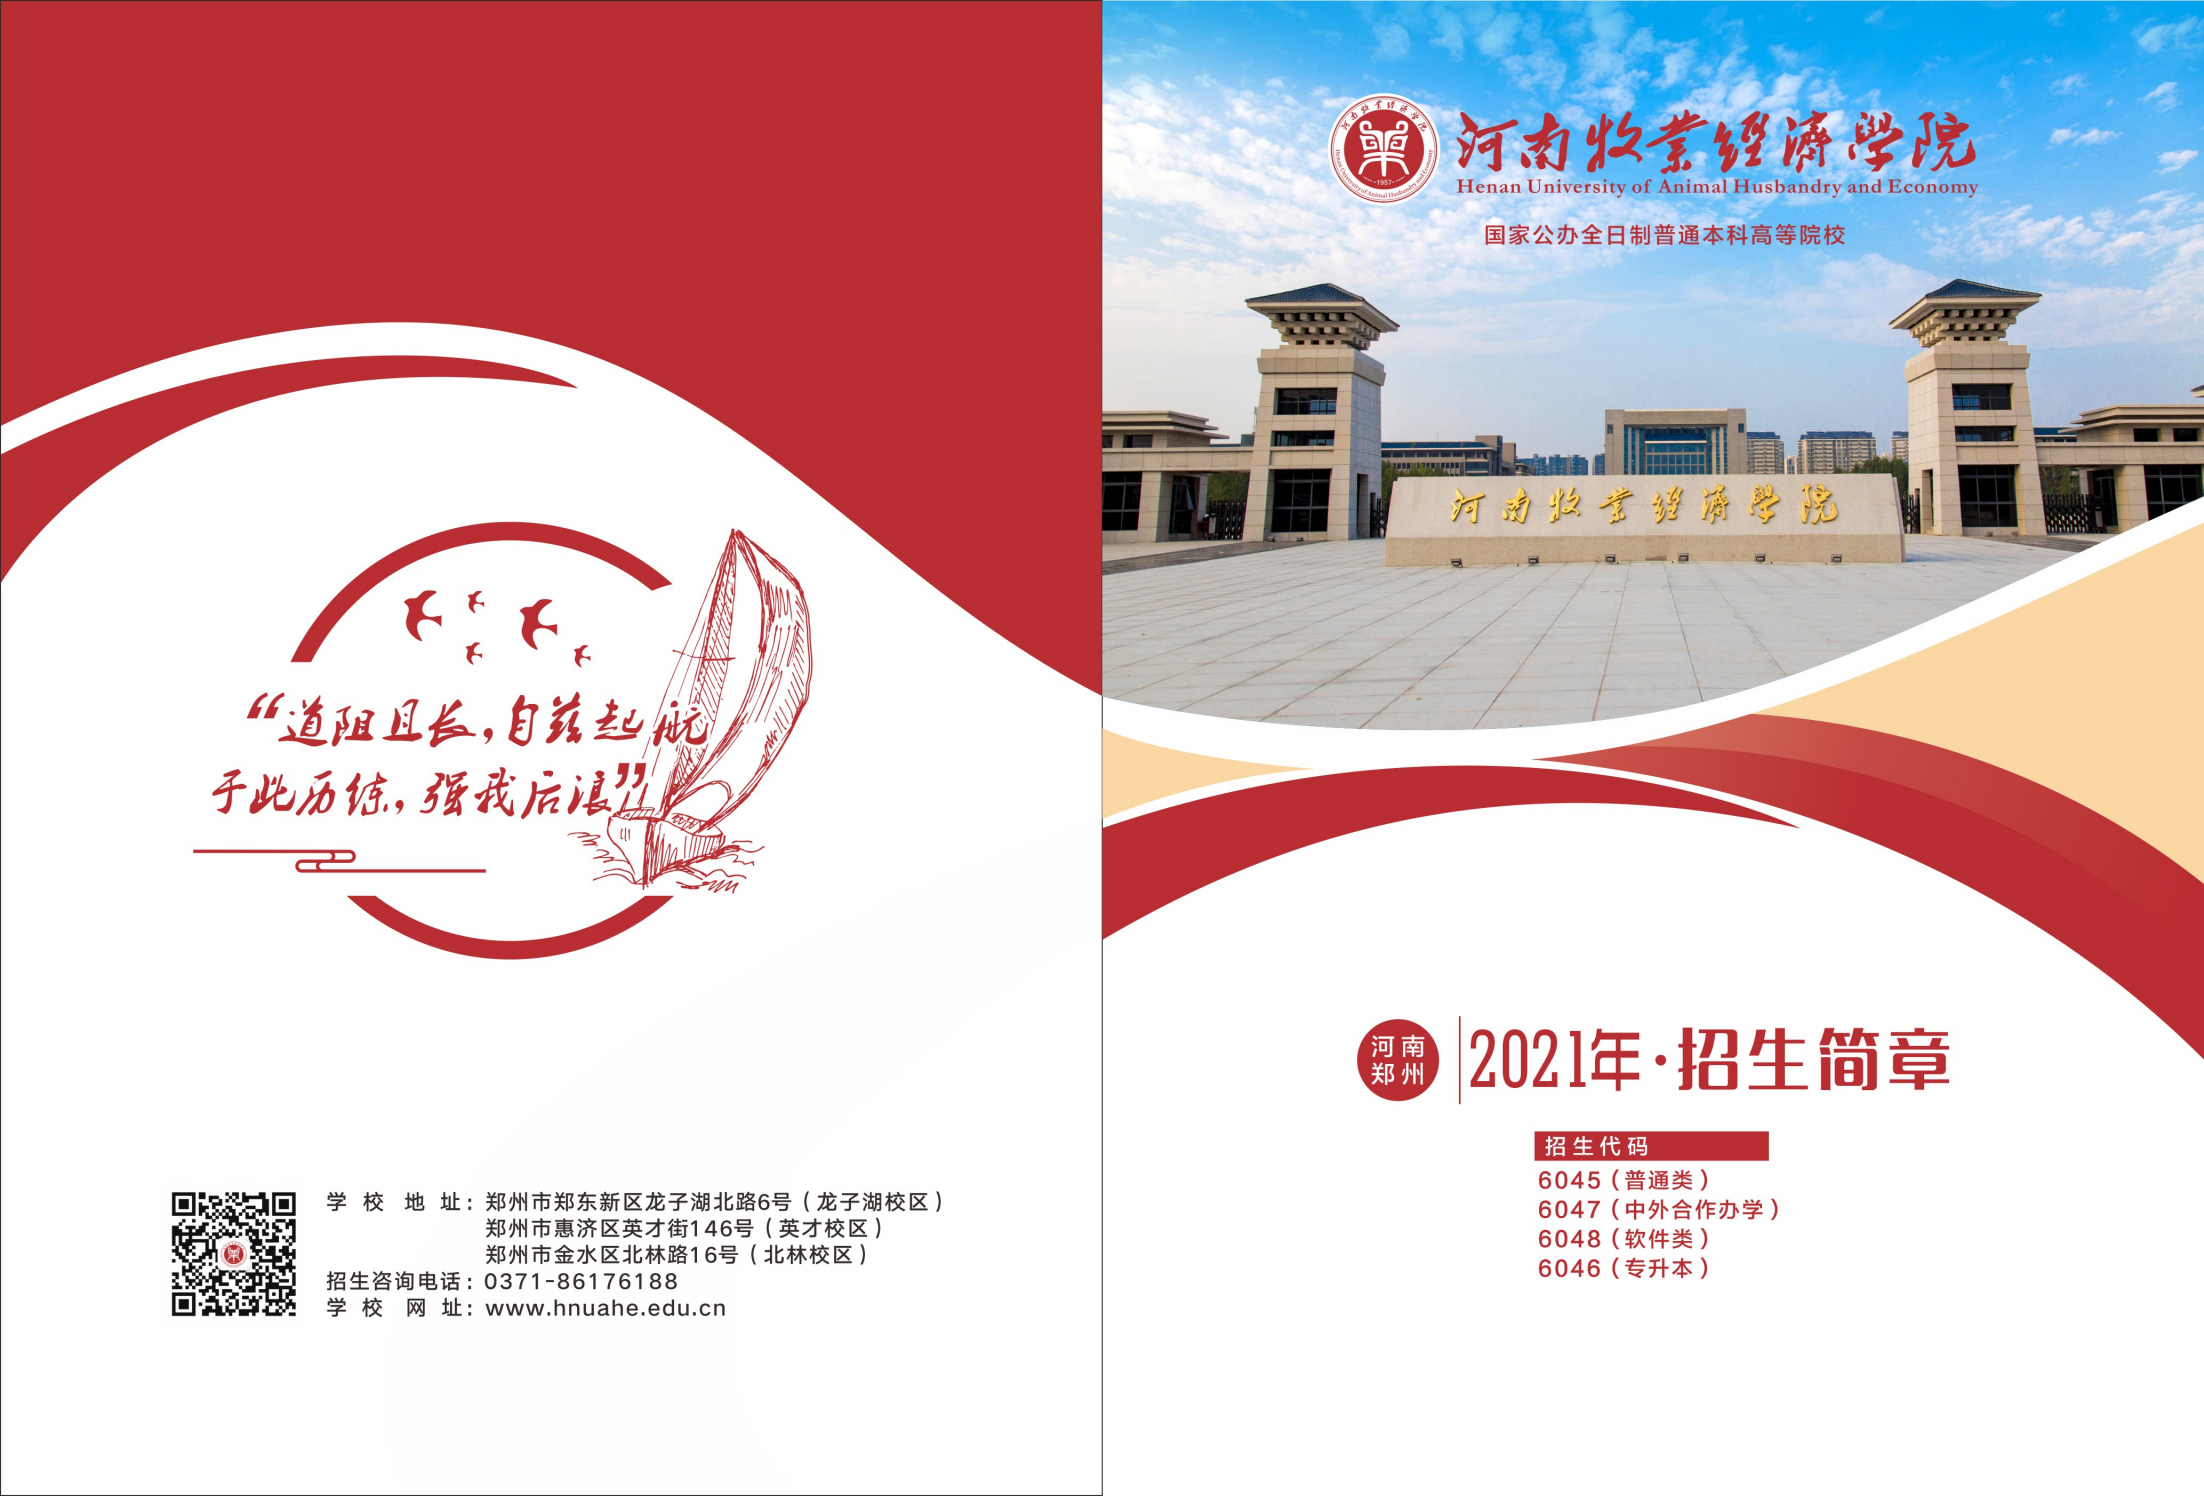 河南牧业经济学院2021年招生简章